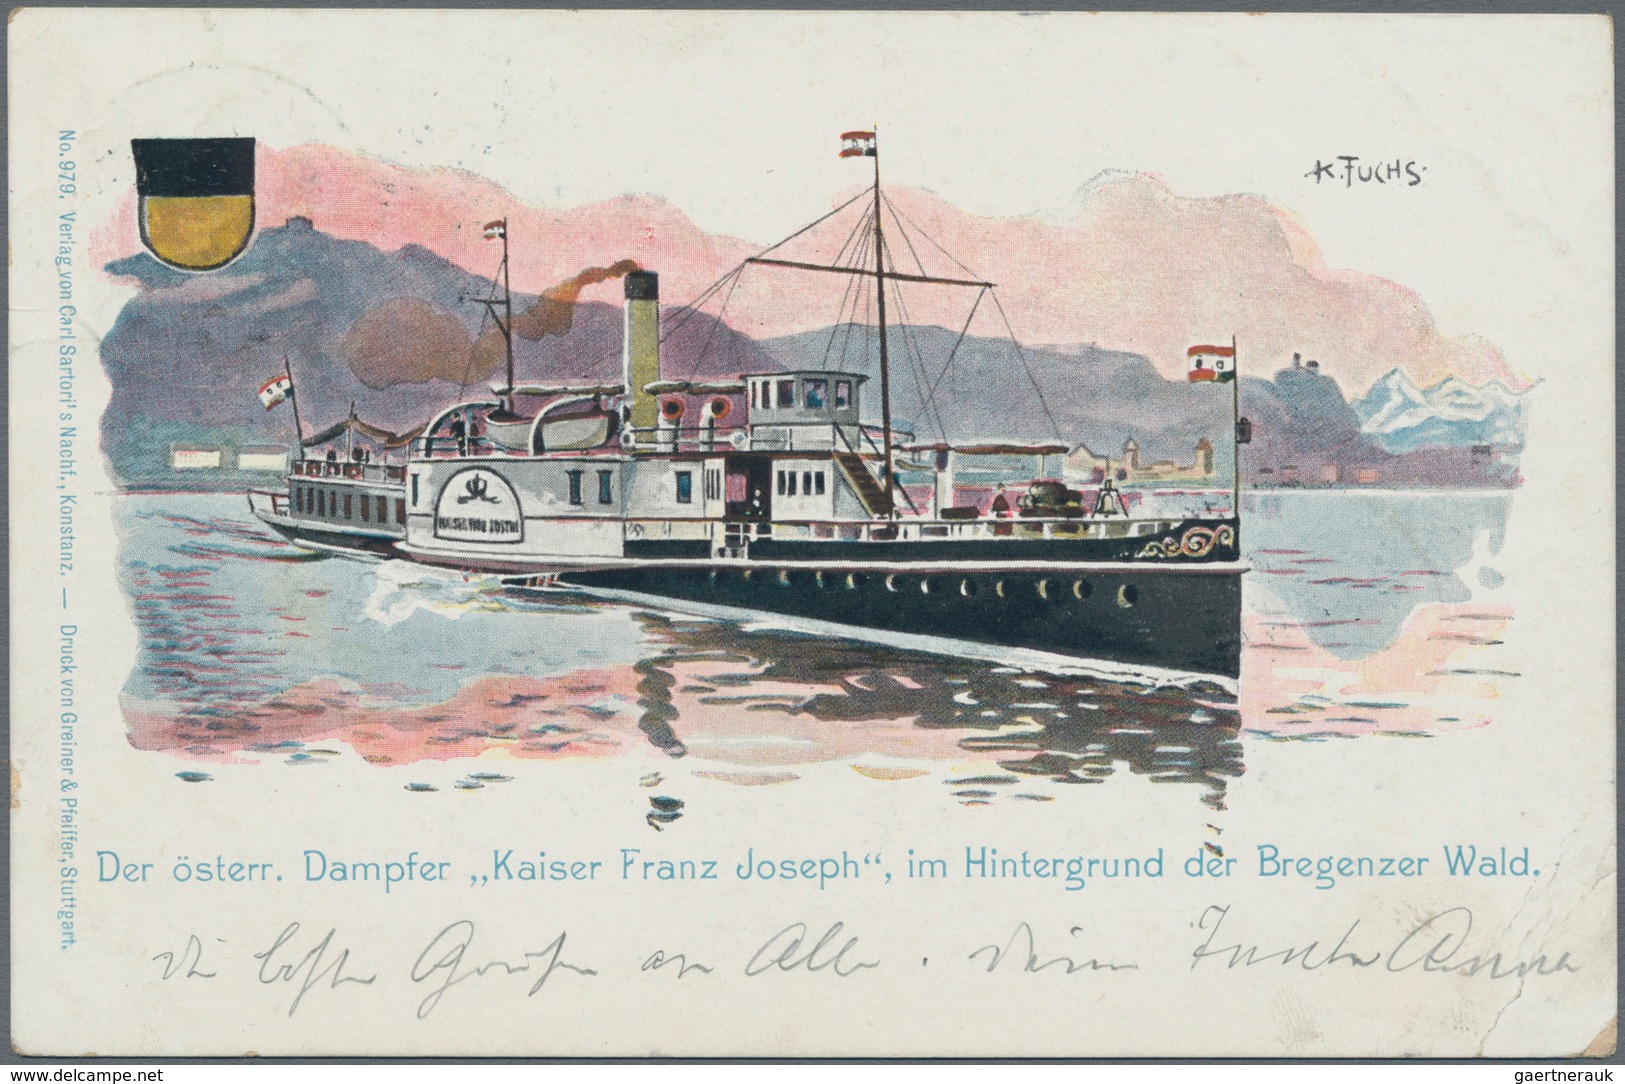 Bodenseeschiffspost: 1757/1910 ca., sehr gehaltvolle und detaillierte Sammlung der Schiffspost auf d